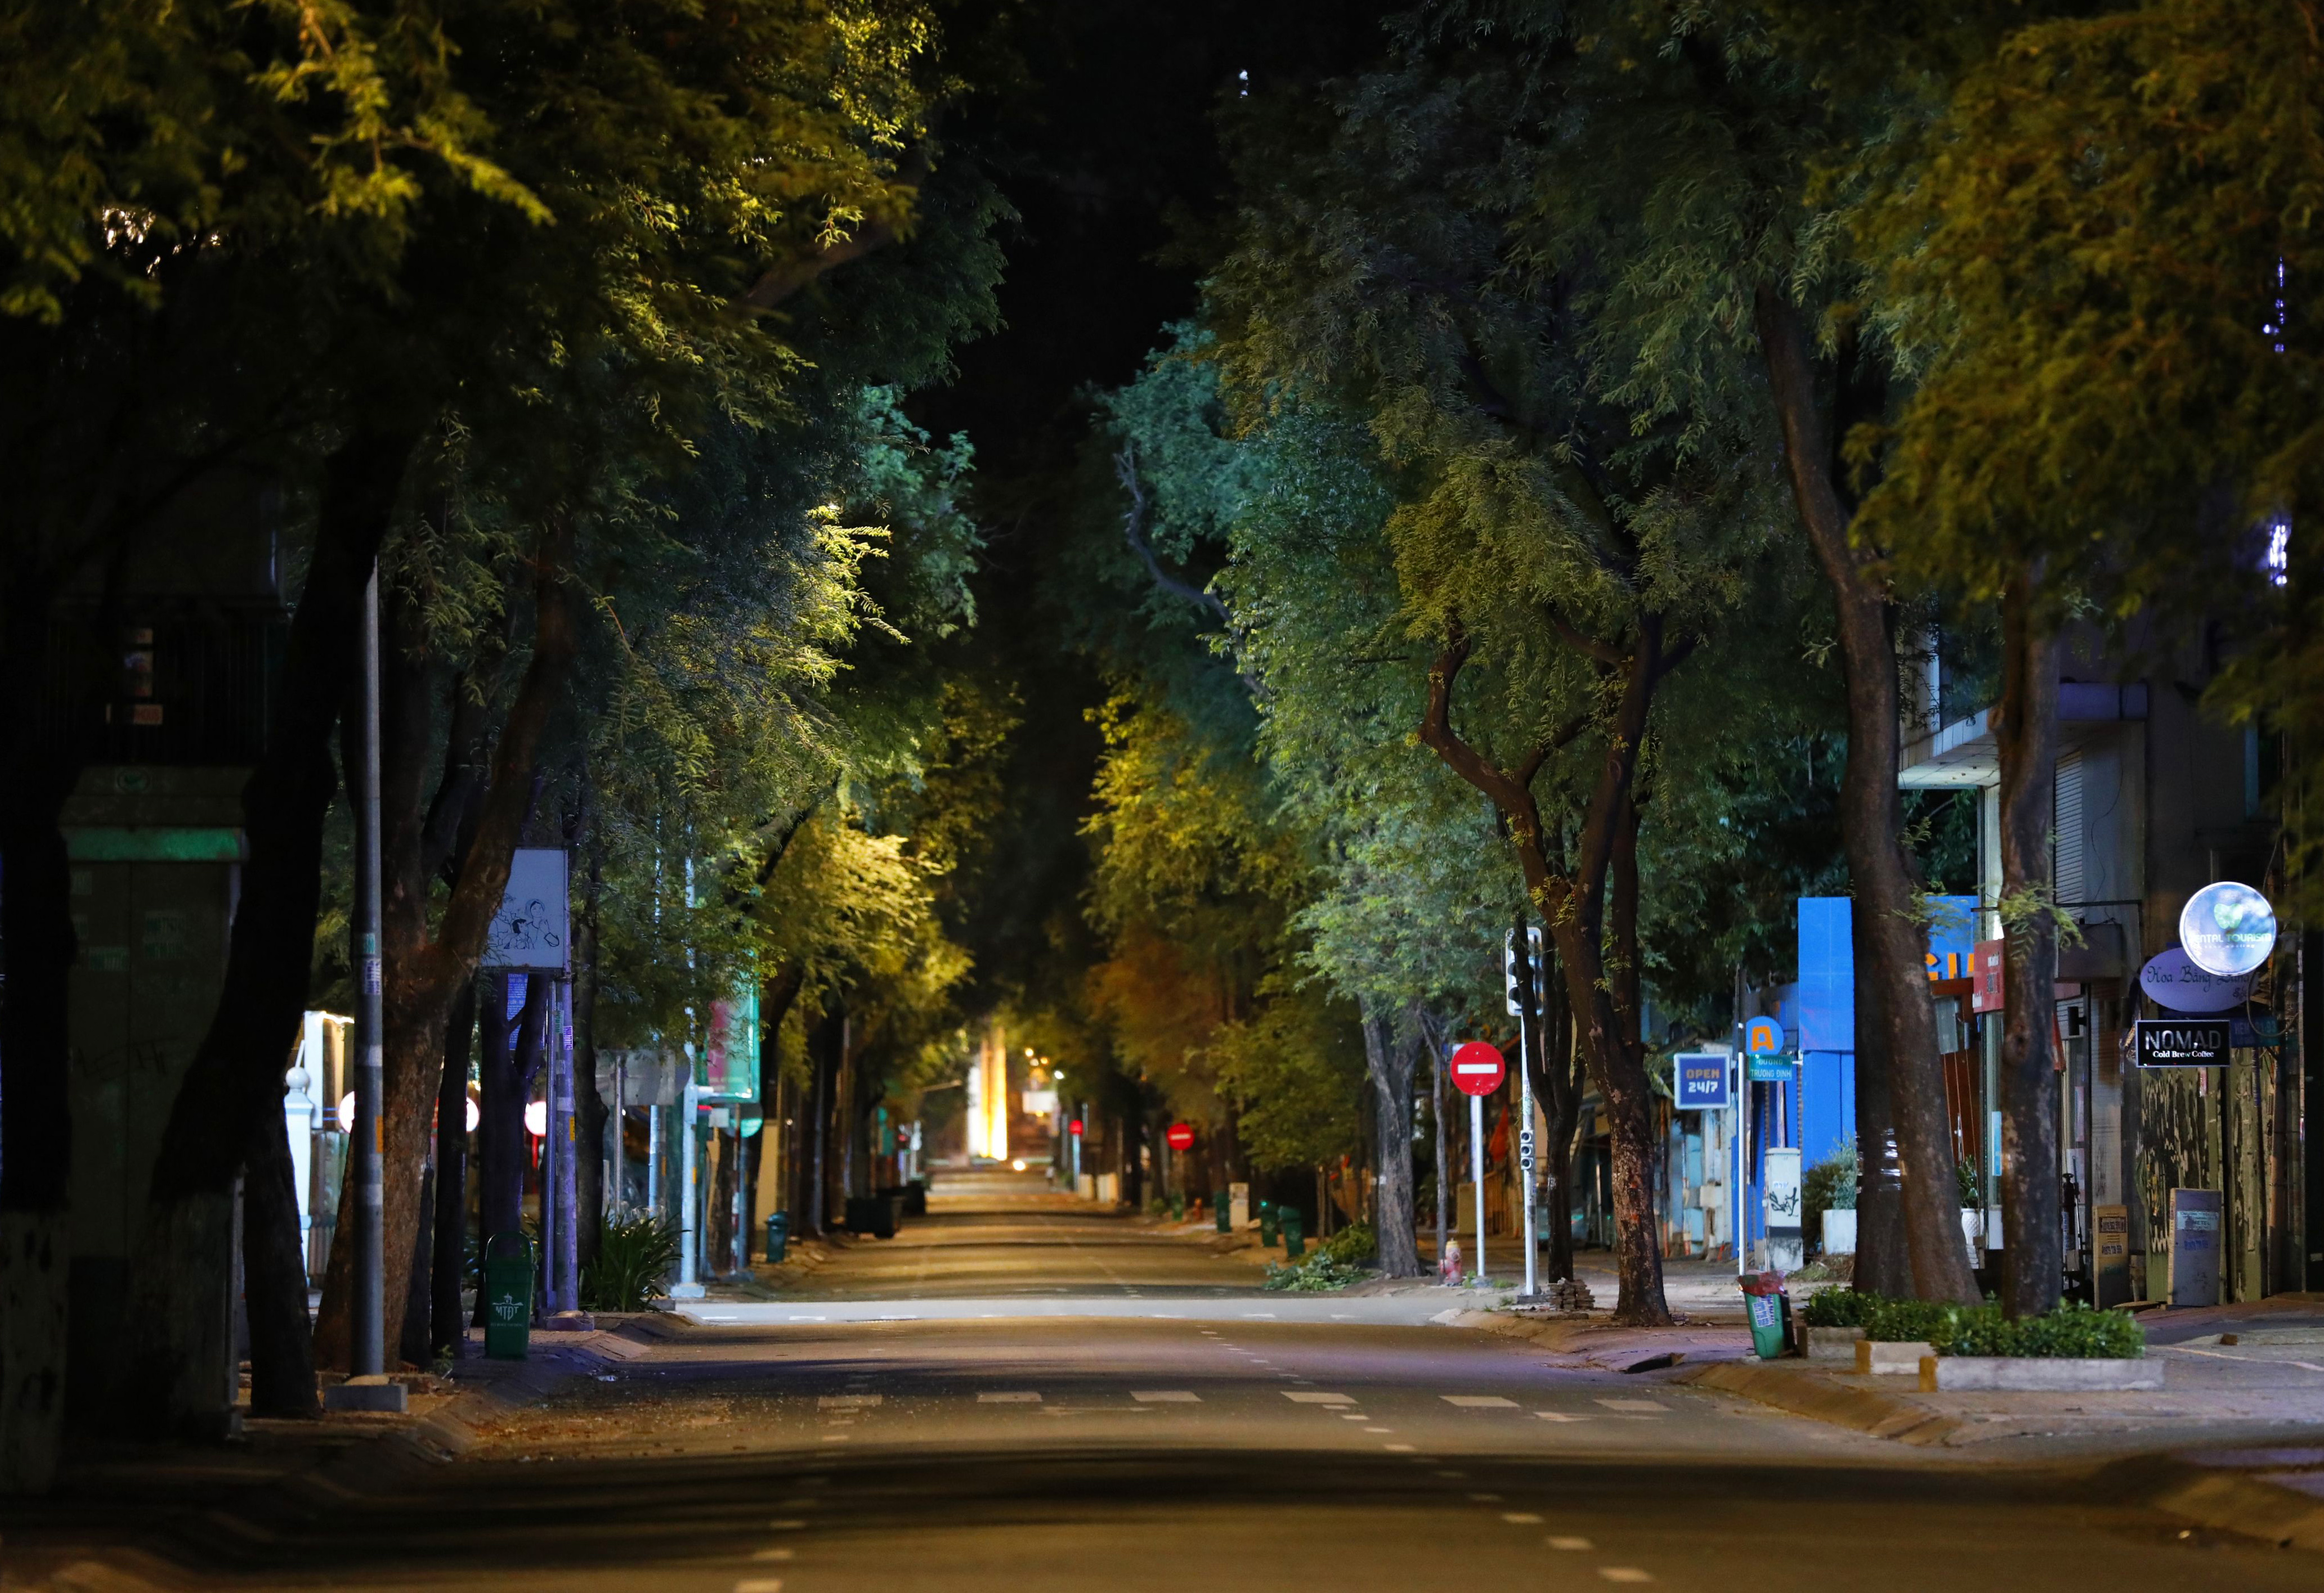 Những đường phố ban đêm ở thành phố luôn hiện ra với sắc đen đầy bí ẩn và những ánh đèn lấp lánh như những chút ánh sao rơi. Hãy đắm chìm trong sự lặng lẽ và hoàn hảo của từng khung cảnh, mỗi góc đường đều chứa đựng những trải nghiệm khó quên.